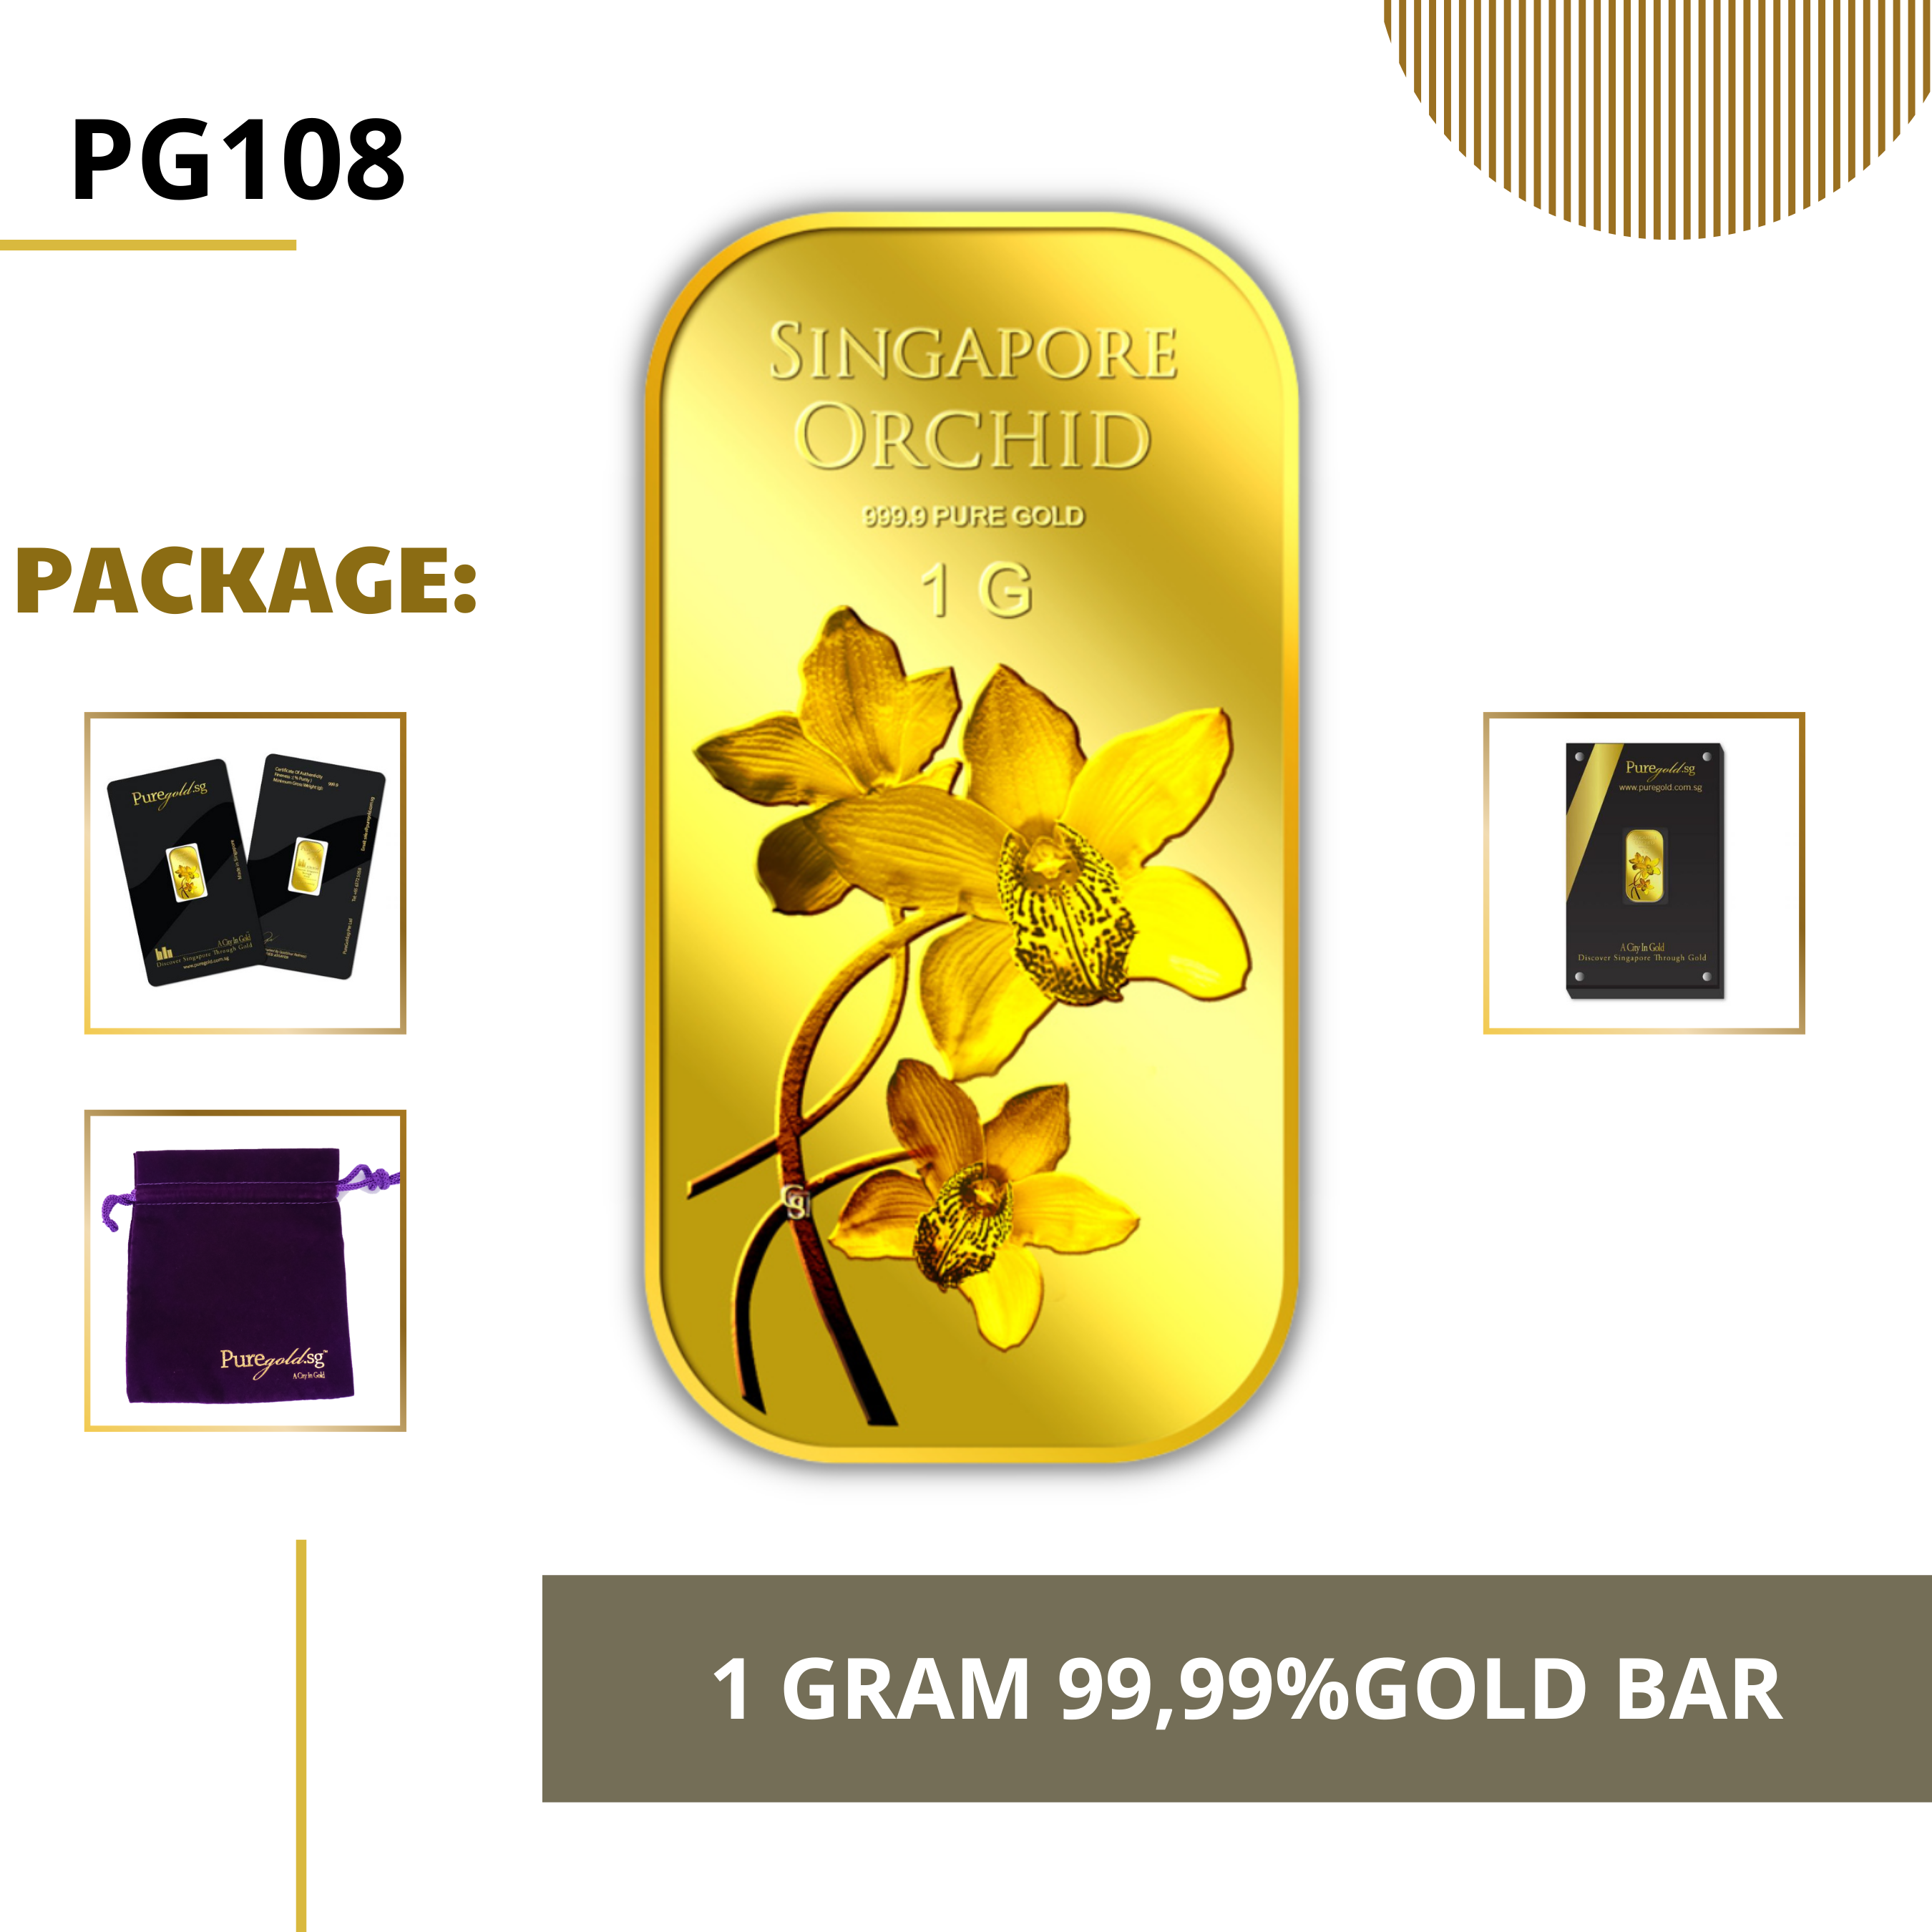 PURE GOLD 99.99% ทองคำแท่ง / Orchid Singapore Series 2 gold bar/ ทองคำแท้จากสิงคโปร์ / ทองคำ 1 กรัม / ทอง 99.99% *การันตีทองแท้*